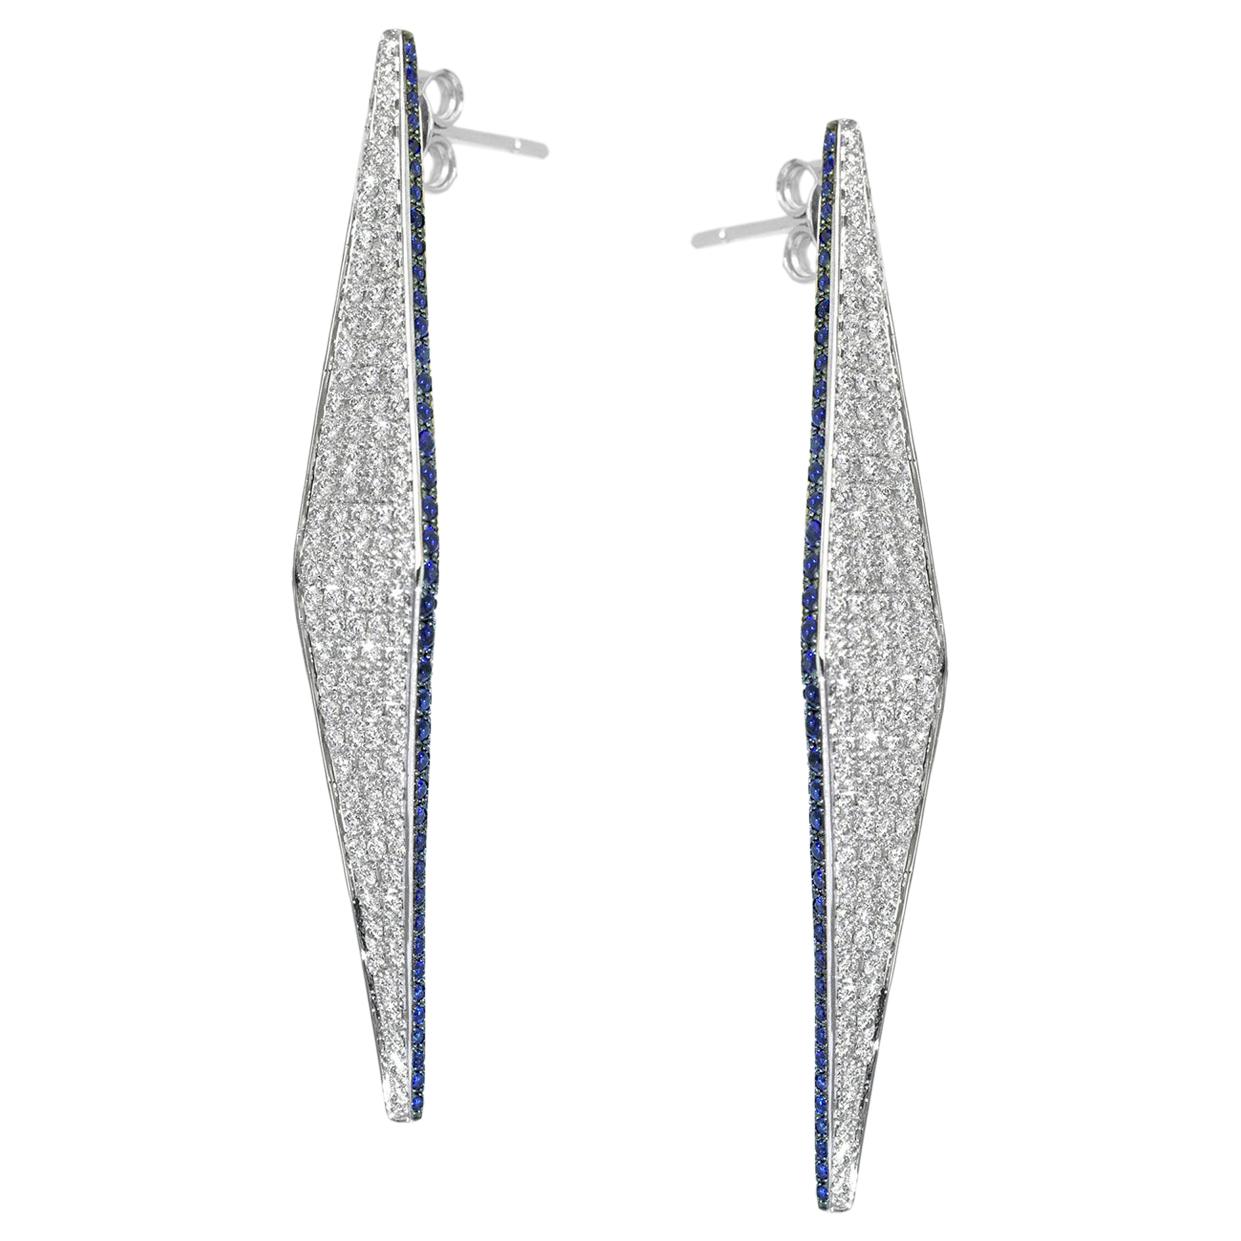 Ralph Masri Modernist Diamond Sapphire Earrings